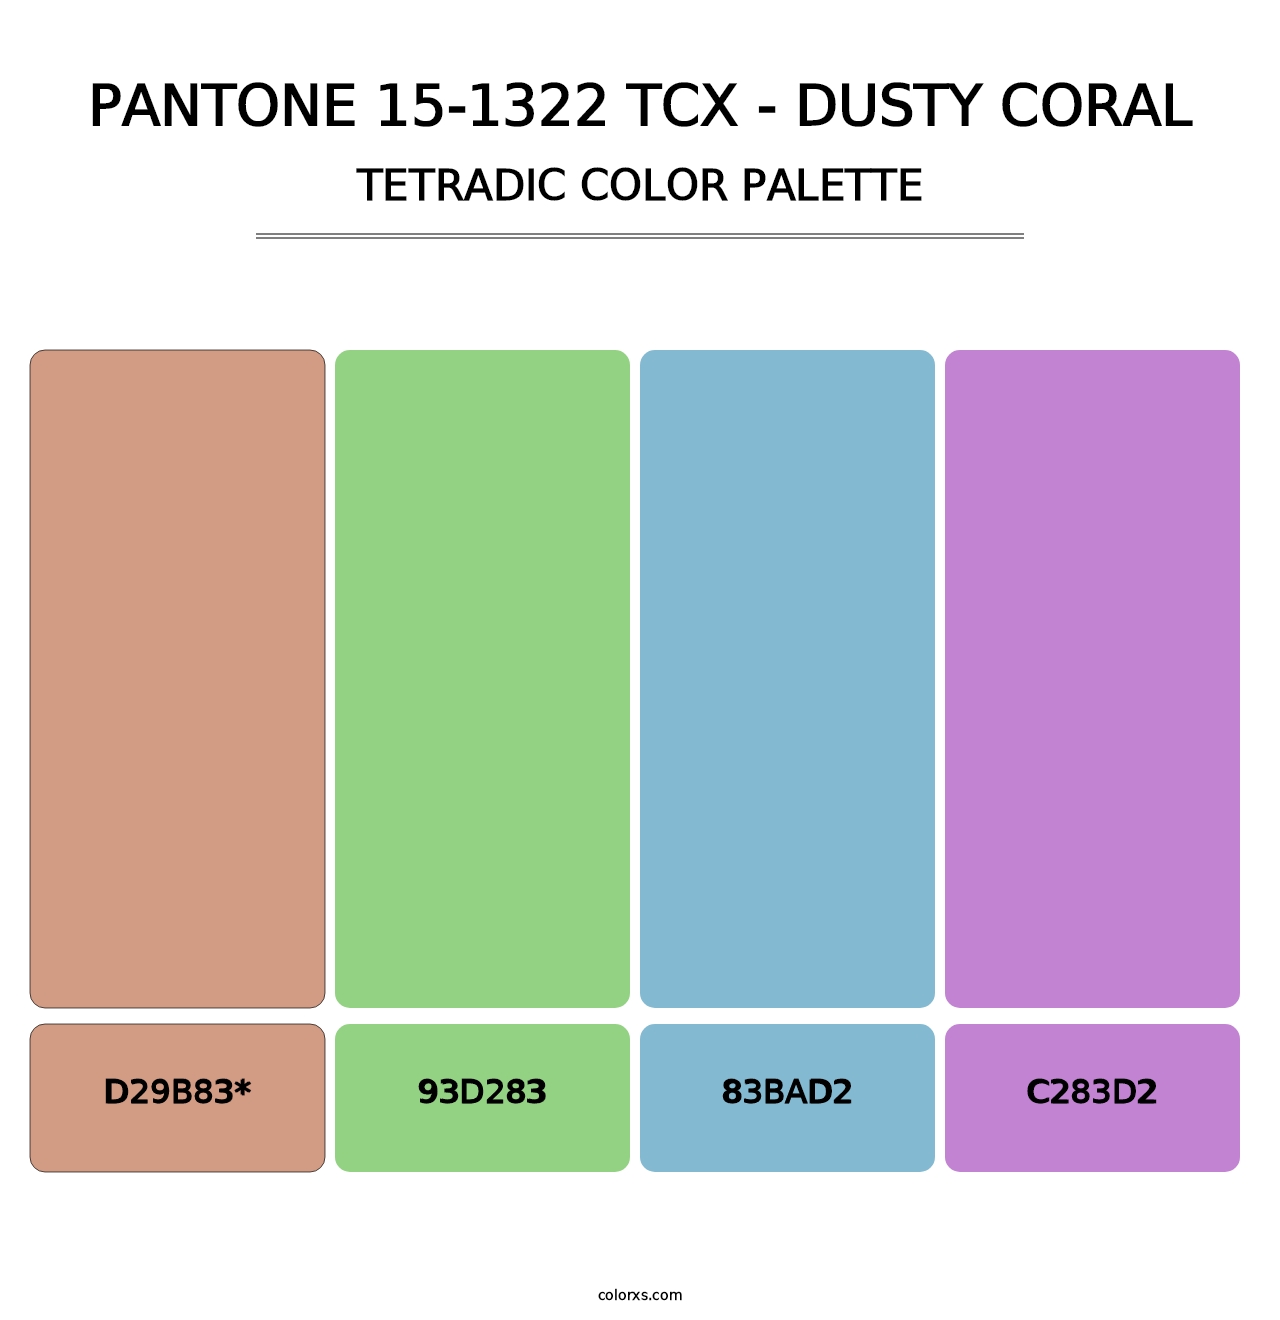 PANTONE 15-1322 TCX - Dusty Coral - Tetradic Color Palette